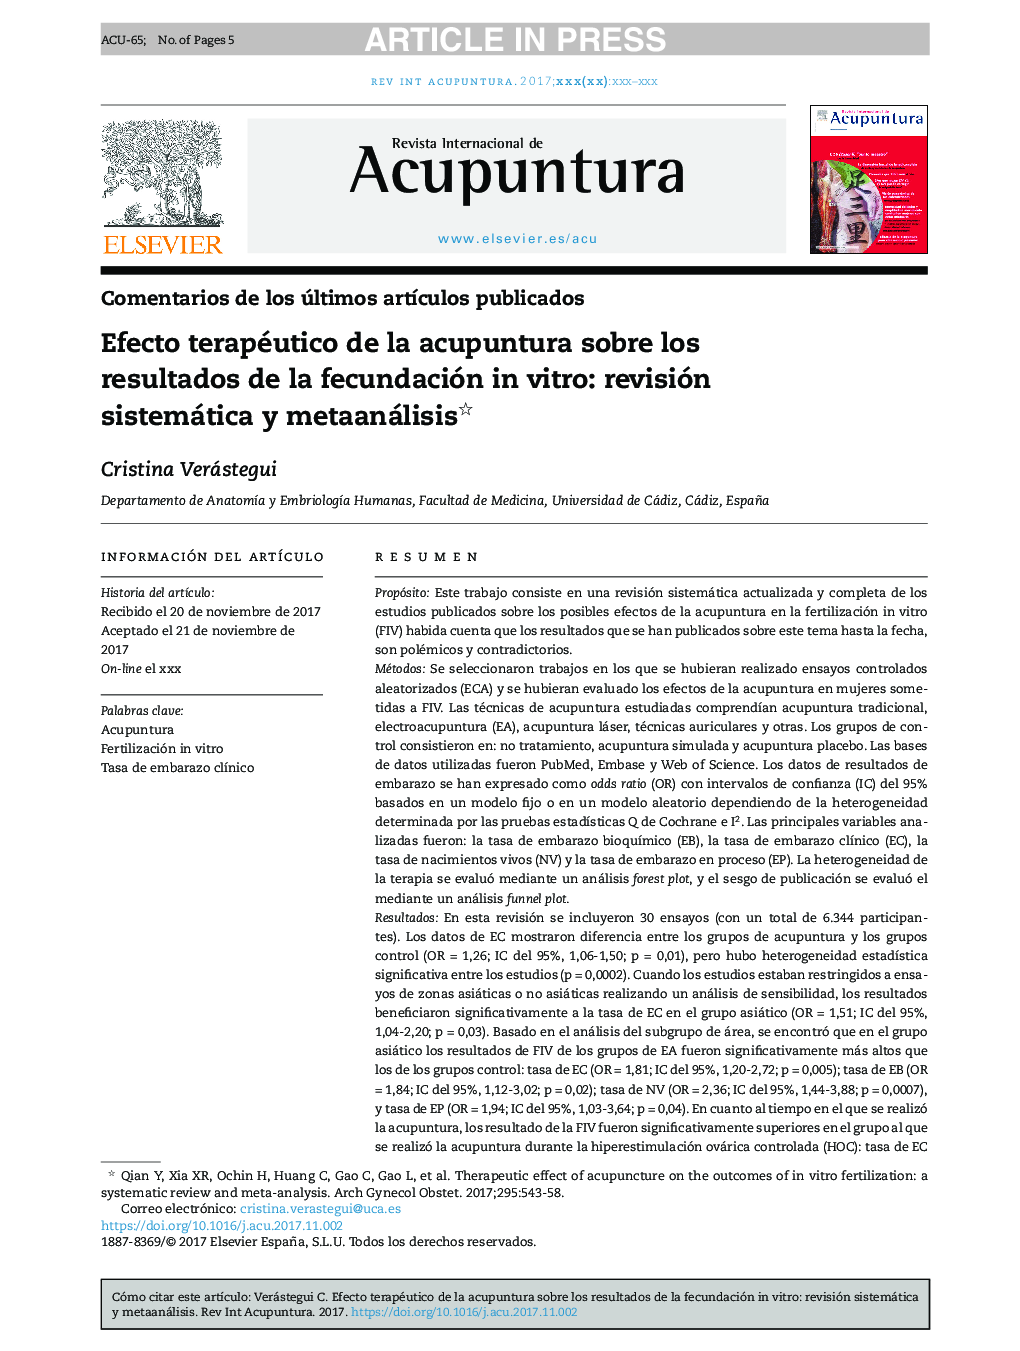 Efecto terapéutico de la acupuntura sobre los resultados de la fecundación in vitro: revisión sistemática y metaanálisis